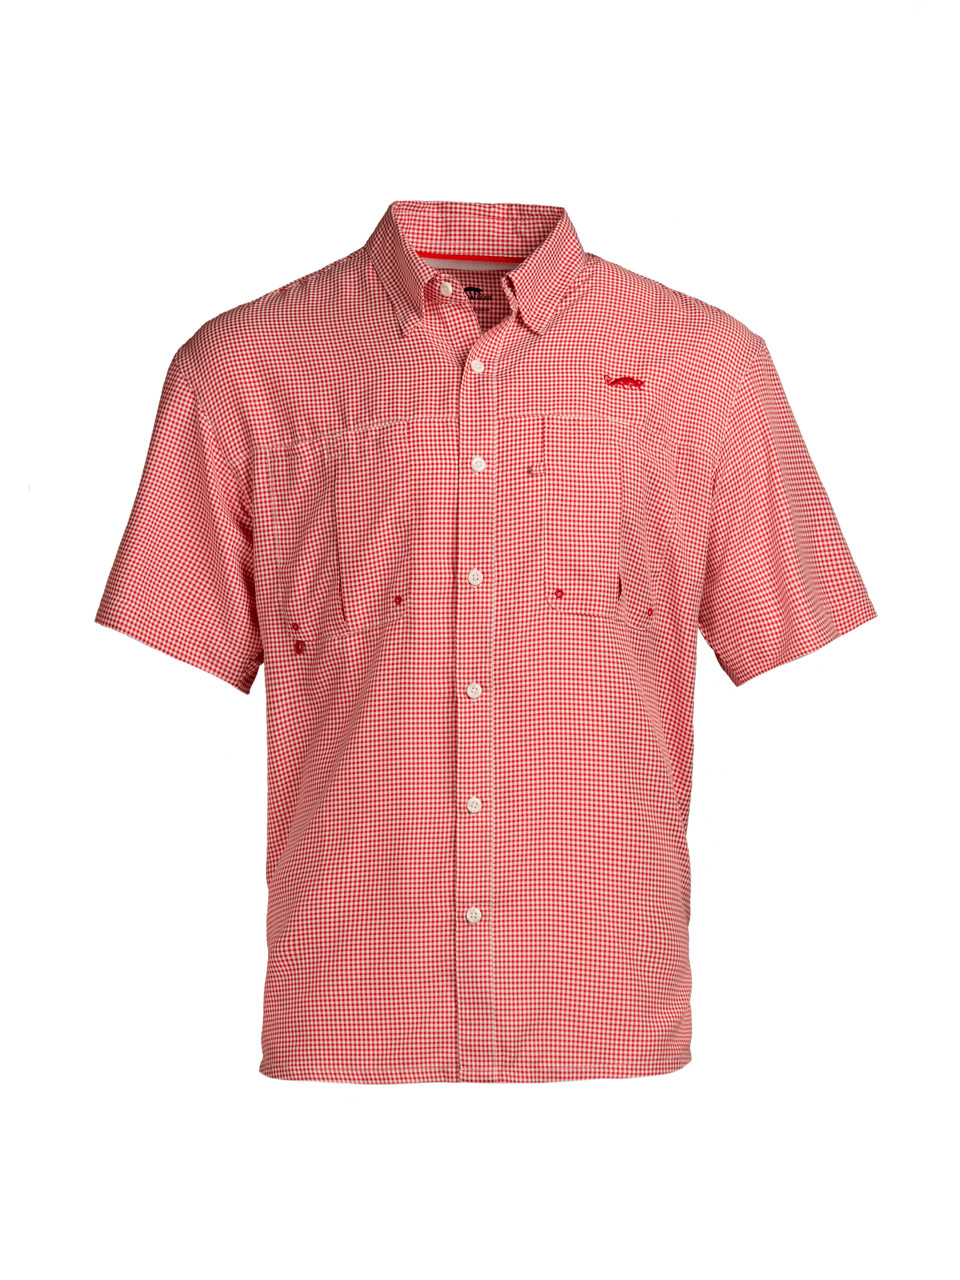 Natural Gear Intercostal Short Sleeved Fishing Shirt - Red Check